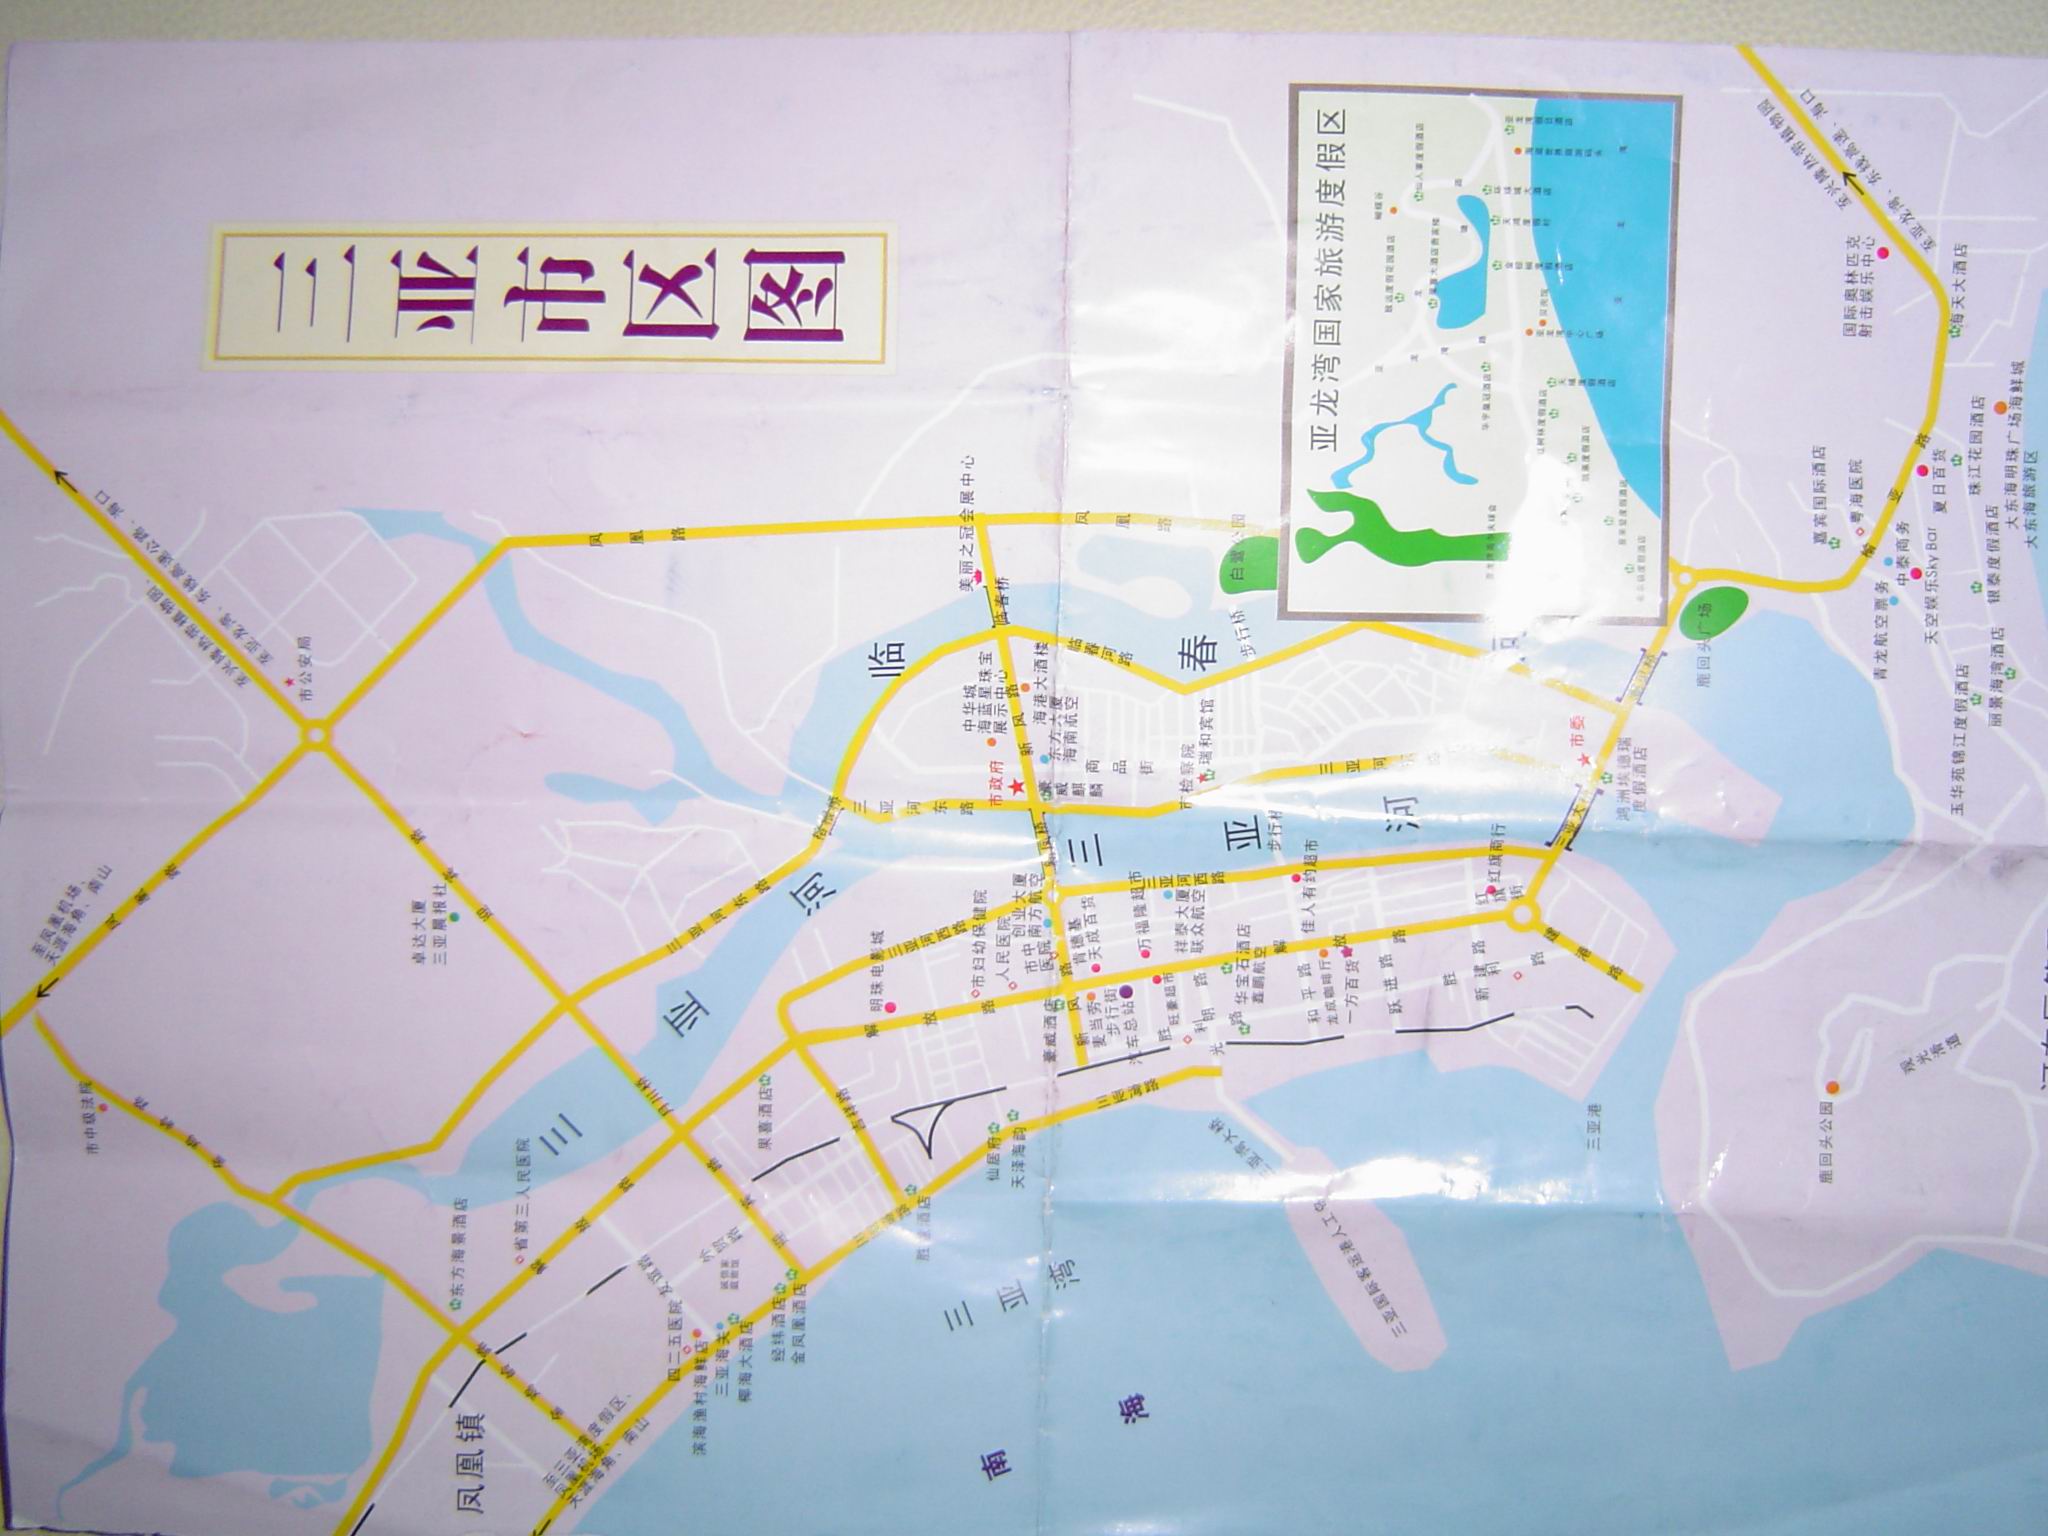 下面附一份三亚市的地图,别以为去了就能买到,那个地方很小,没有单独